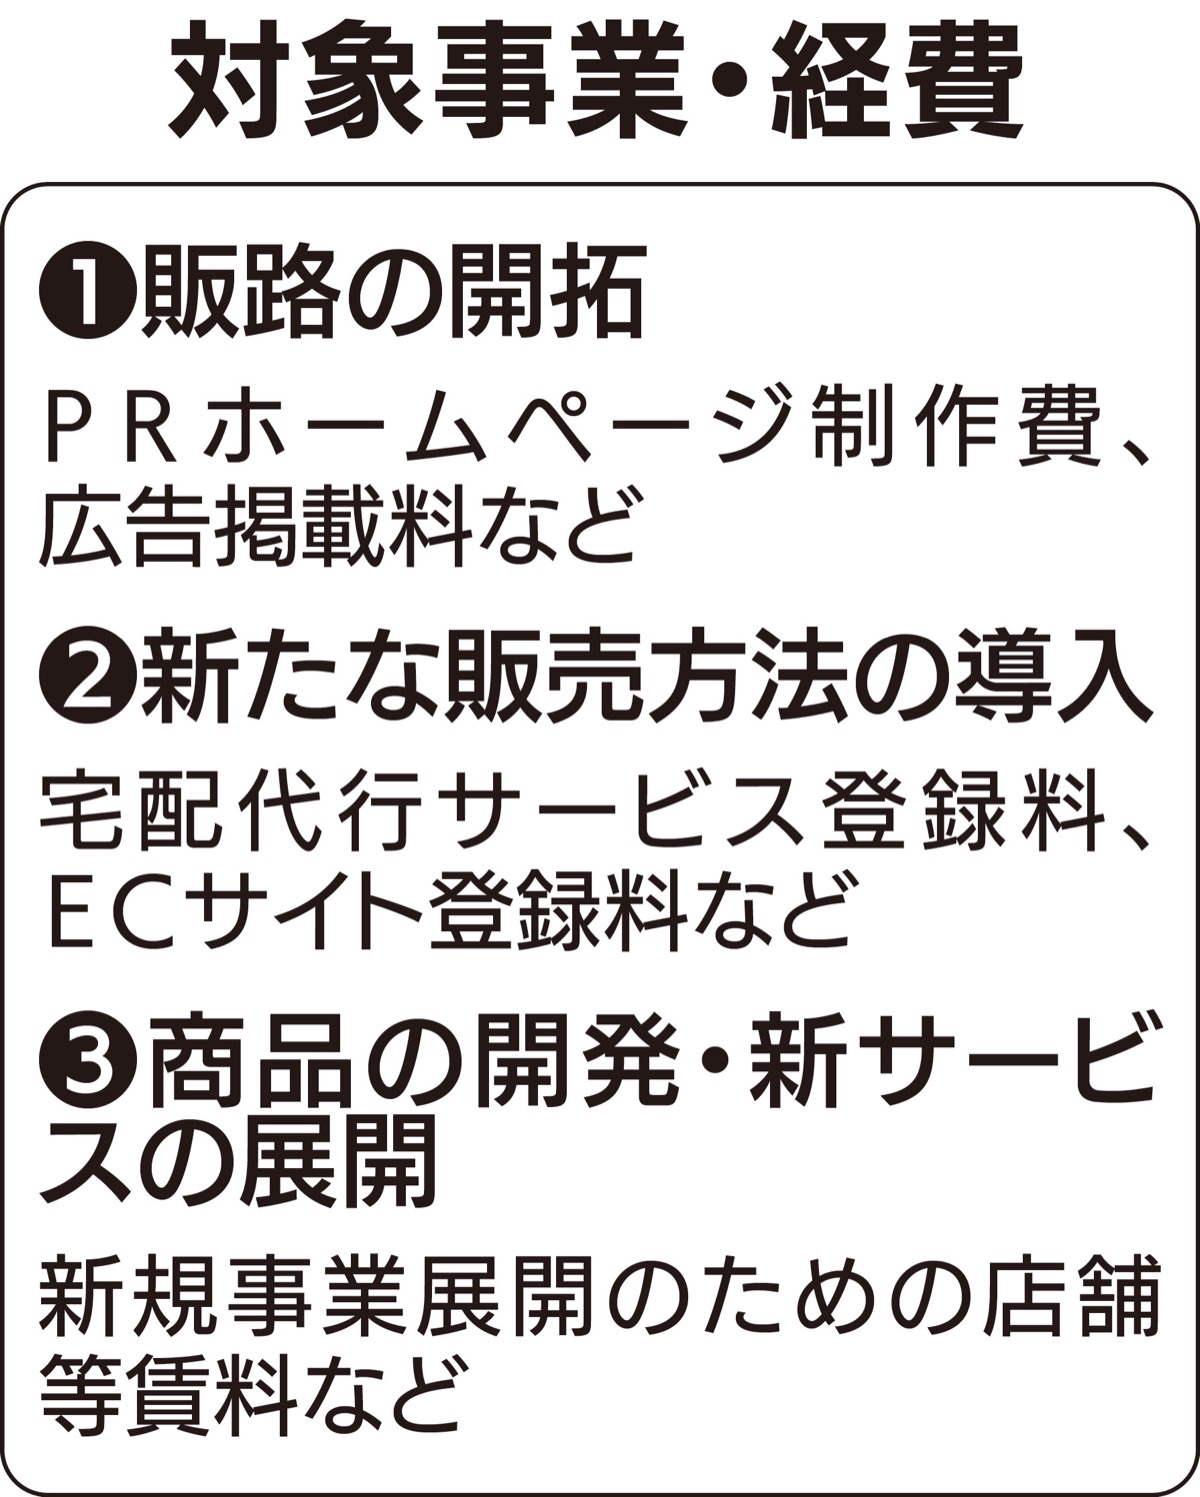 横浜市 コロナ対策販路開拓に補助金 中小企業向けに事業創設 神奈川区 タウンニュース